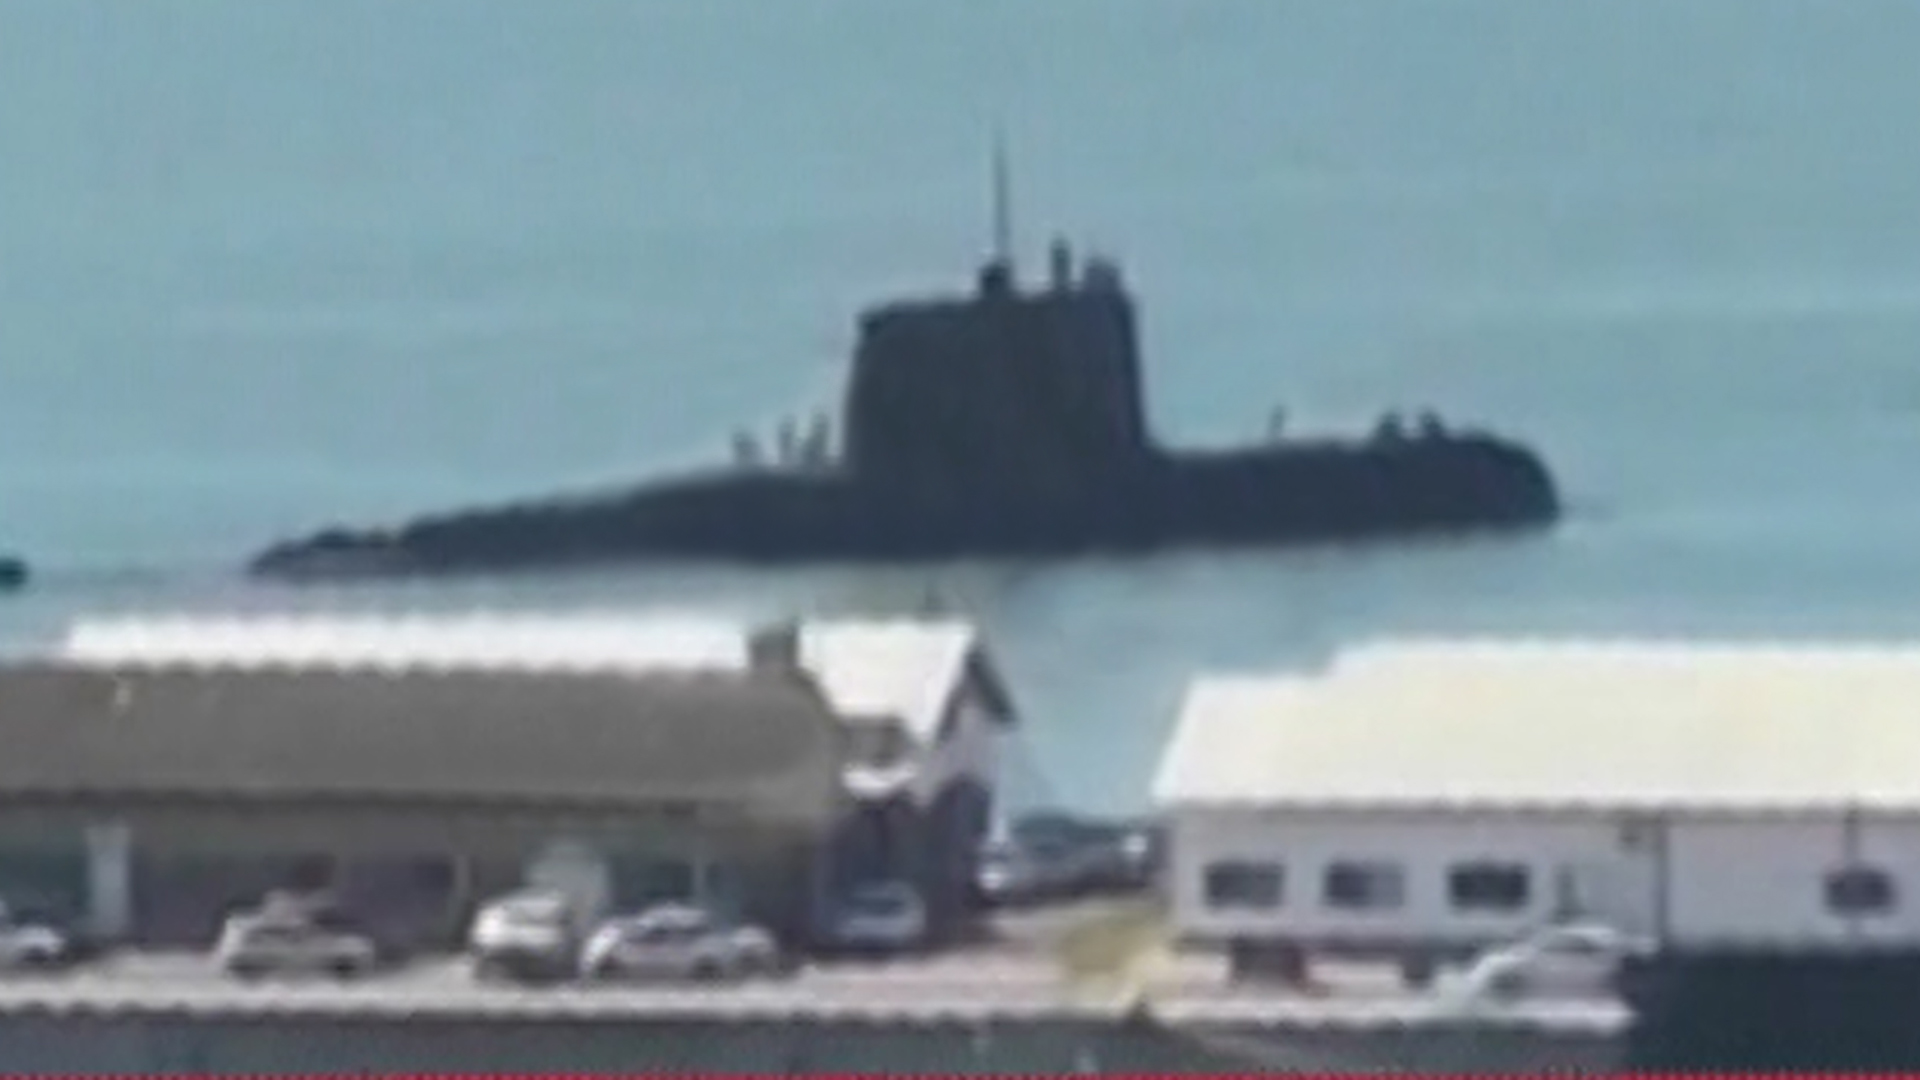 El submarino ARA San Juan y sus 44 tripulantes, zarparon de la Base Naval de Mar del Plata el 24 de octubre de 2017 y no regresaron más. Sus restos fueron encontrados a unos 900 metros de profundidad el 17 de noviembre de 2018.